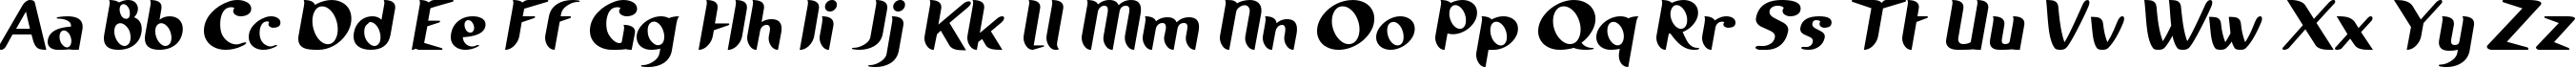 Пример написания английского алфавита шрифтом Running shoe